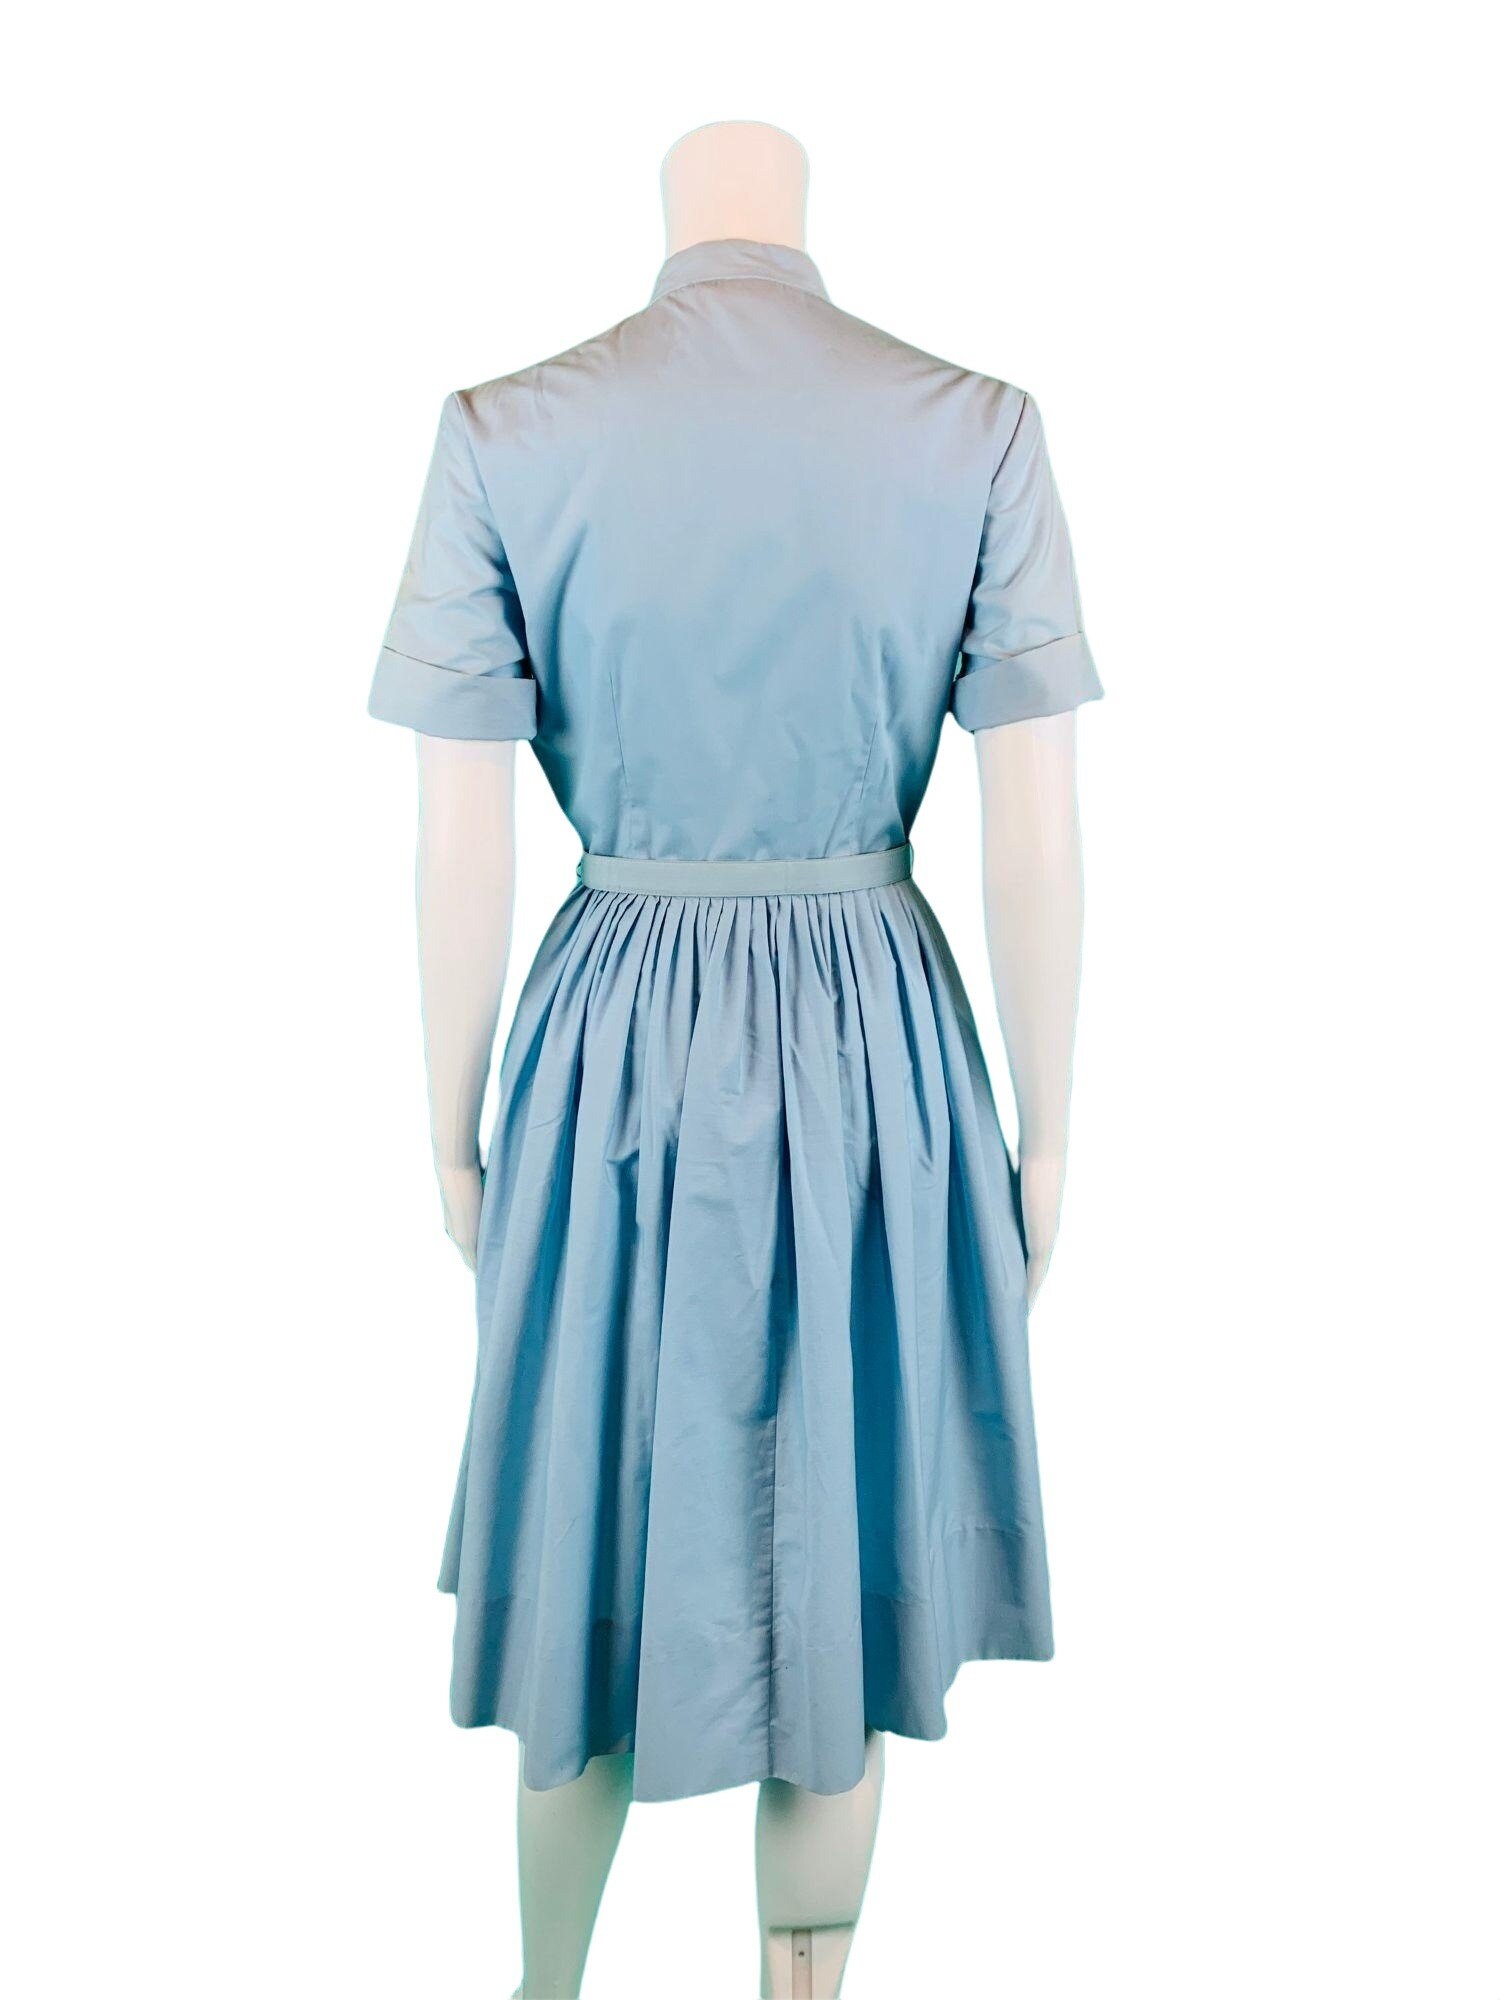 Vintage 1960s Shirtdress Light Blue Ruffle Full Skirt Dress | Etsy